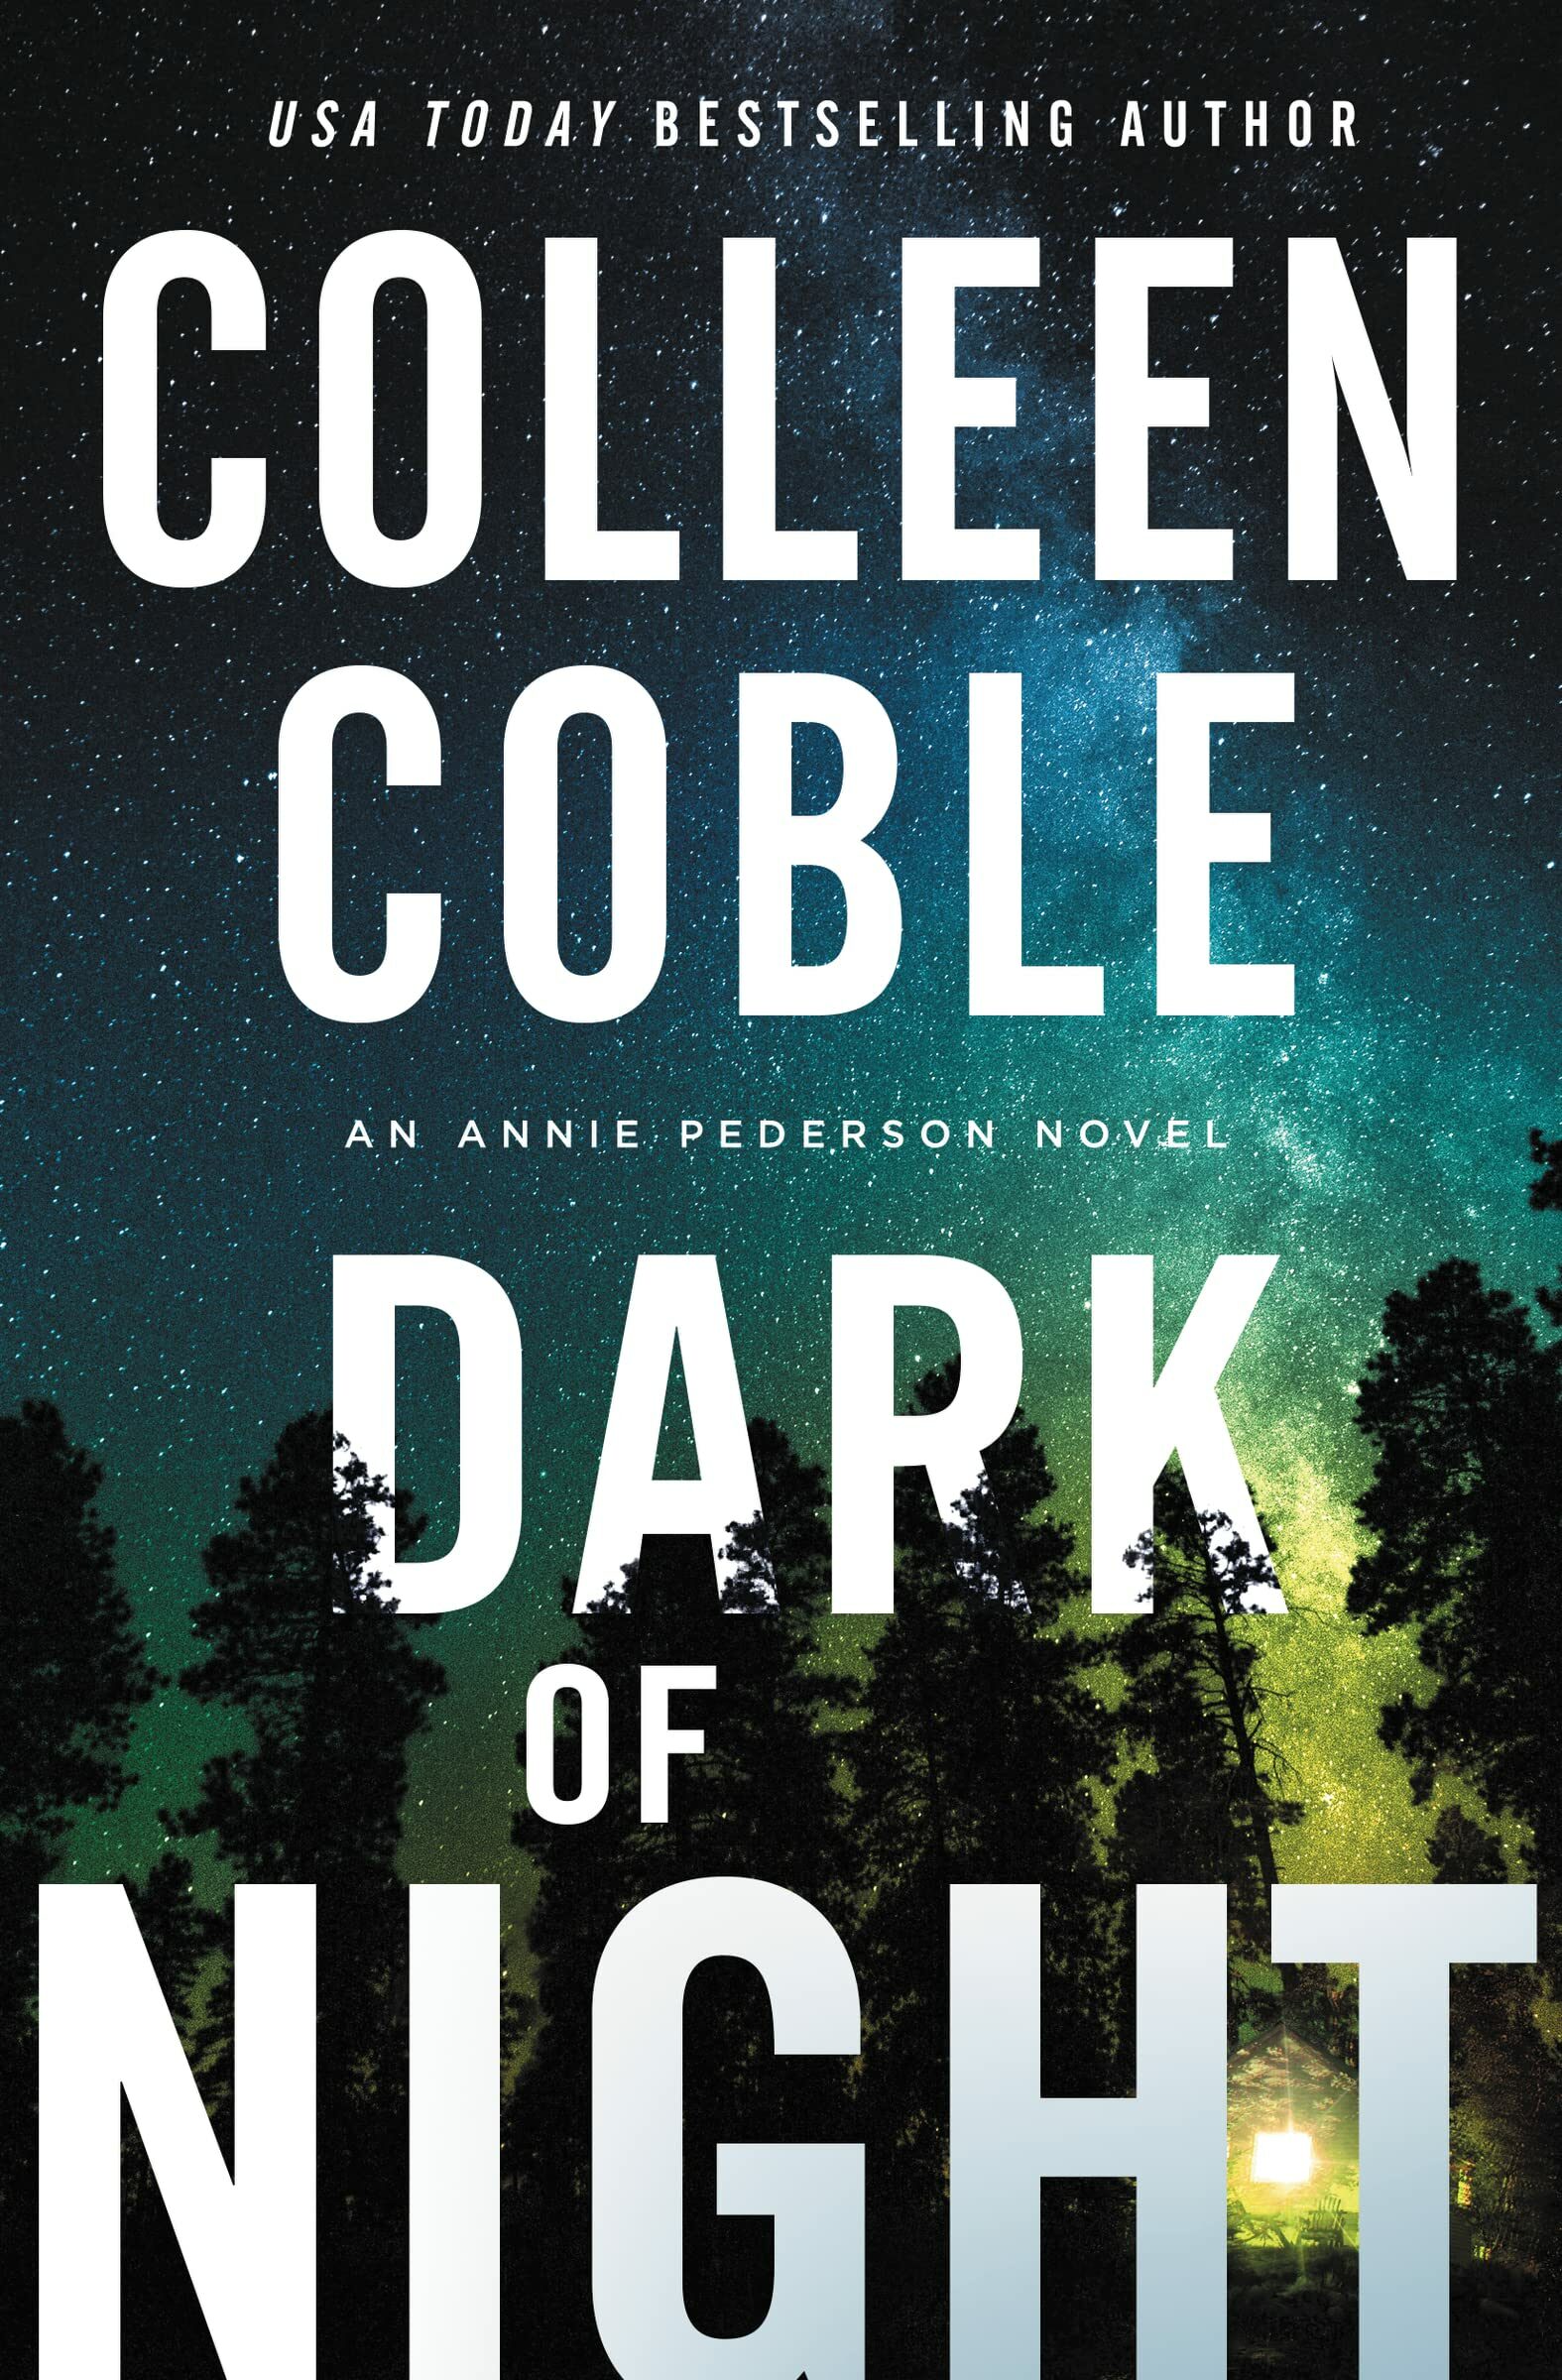 Dark of Night (An Annie Pederson Novel #2)